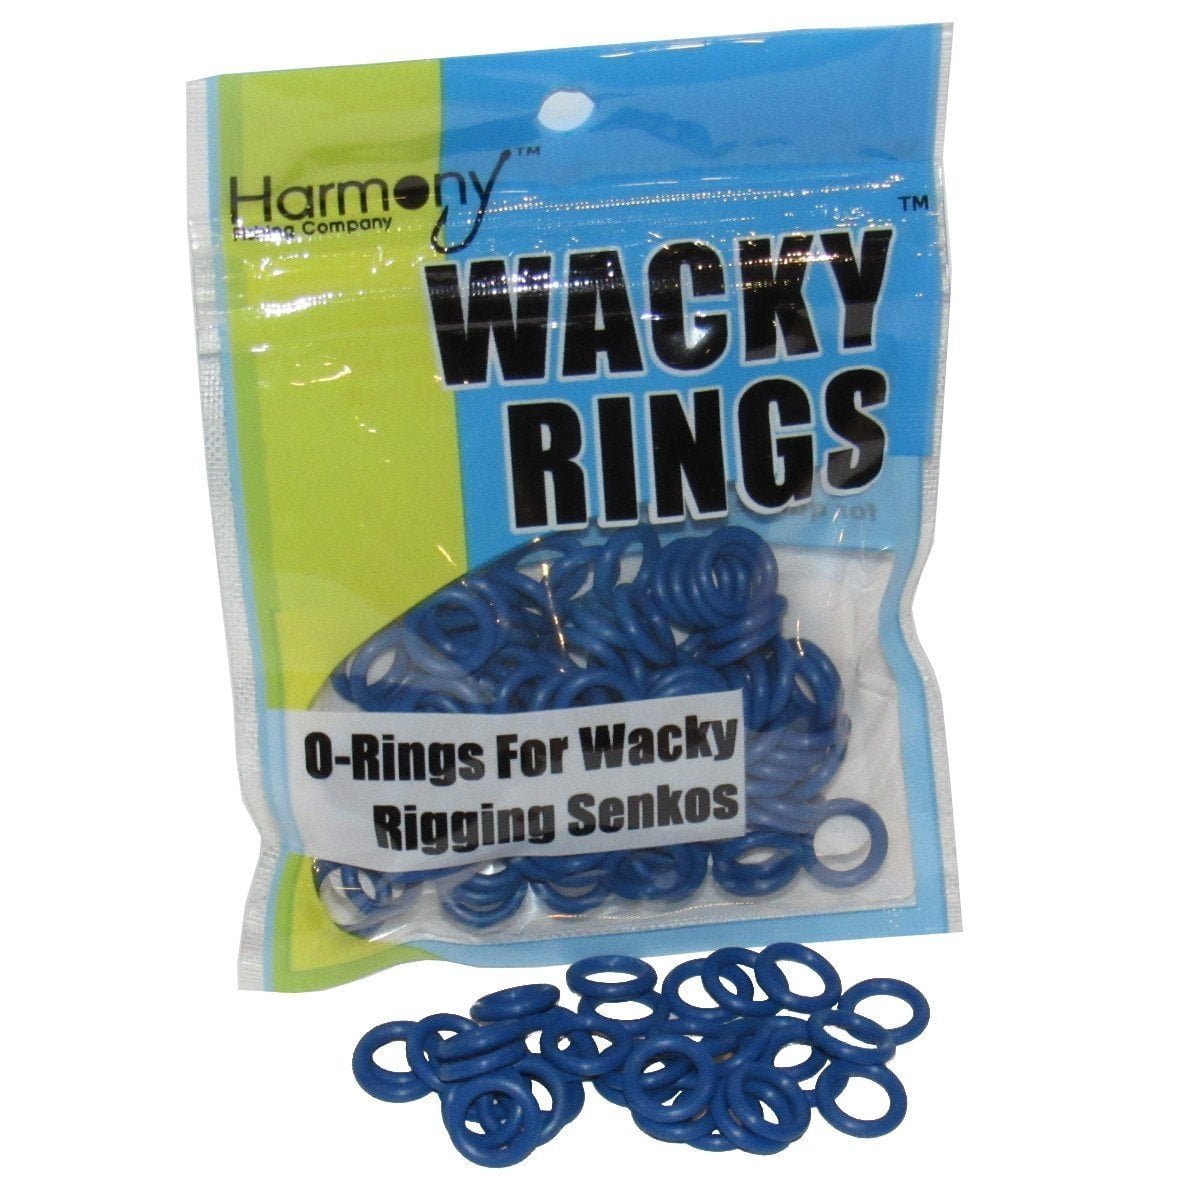 Wacky Worm Kits Rig Tool & 100Pcs O Rings For Fishing BLUE B8U0 Sporting J8F3 